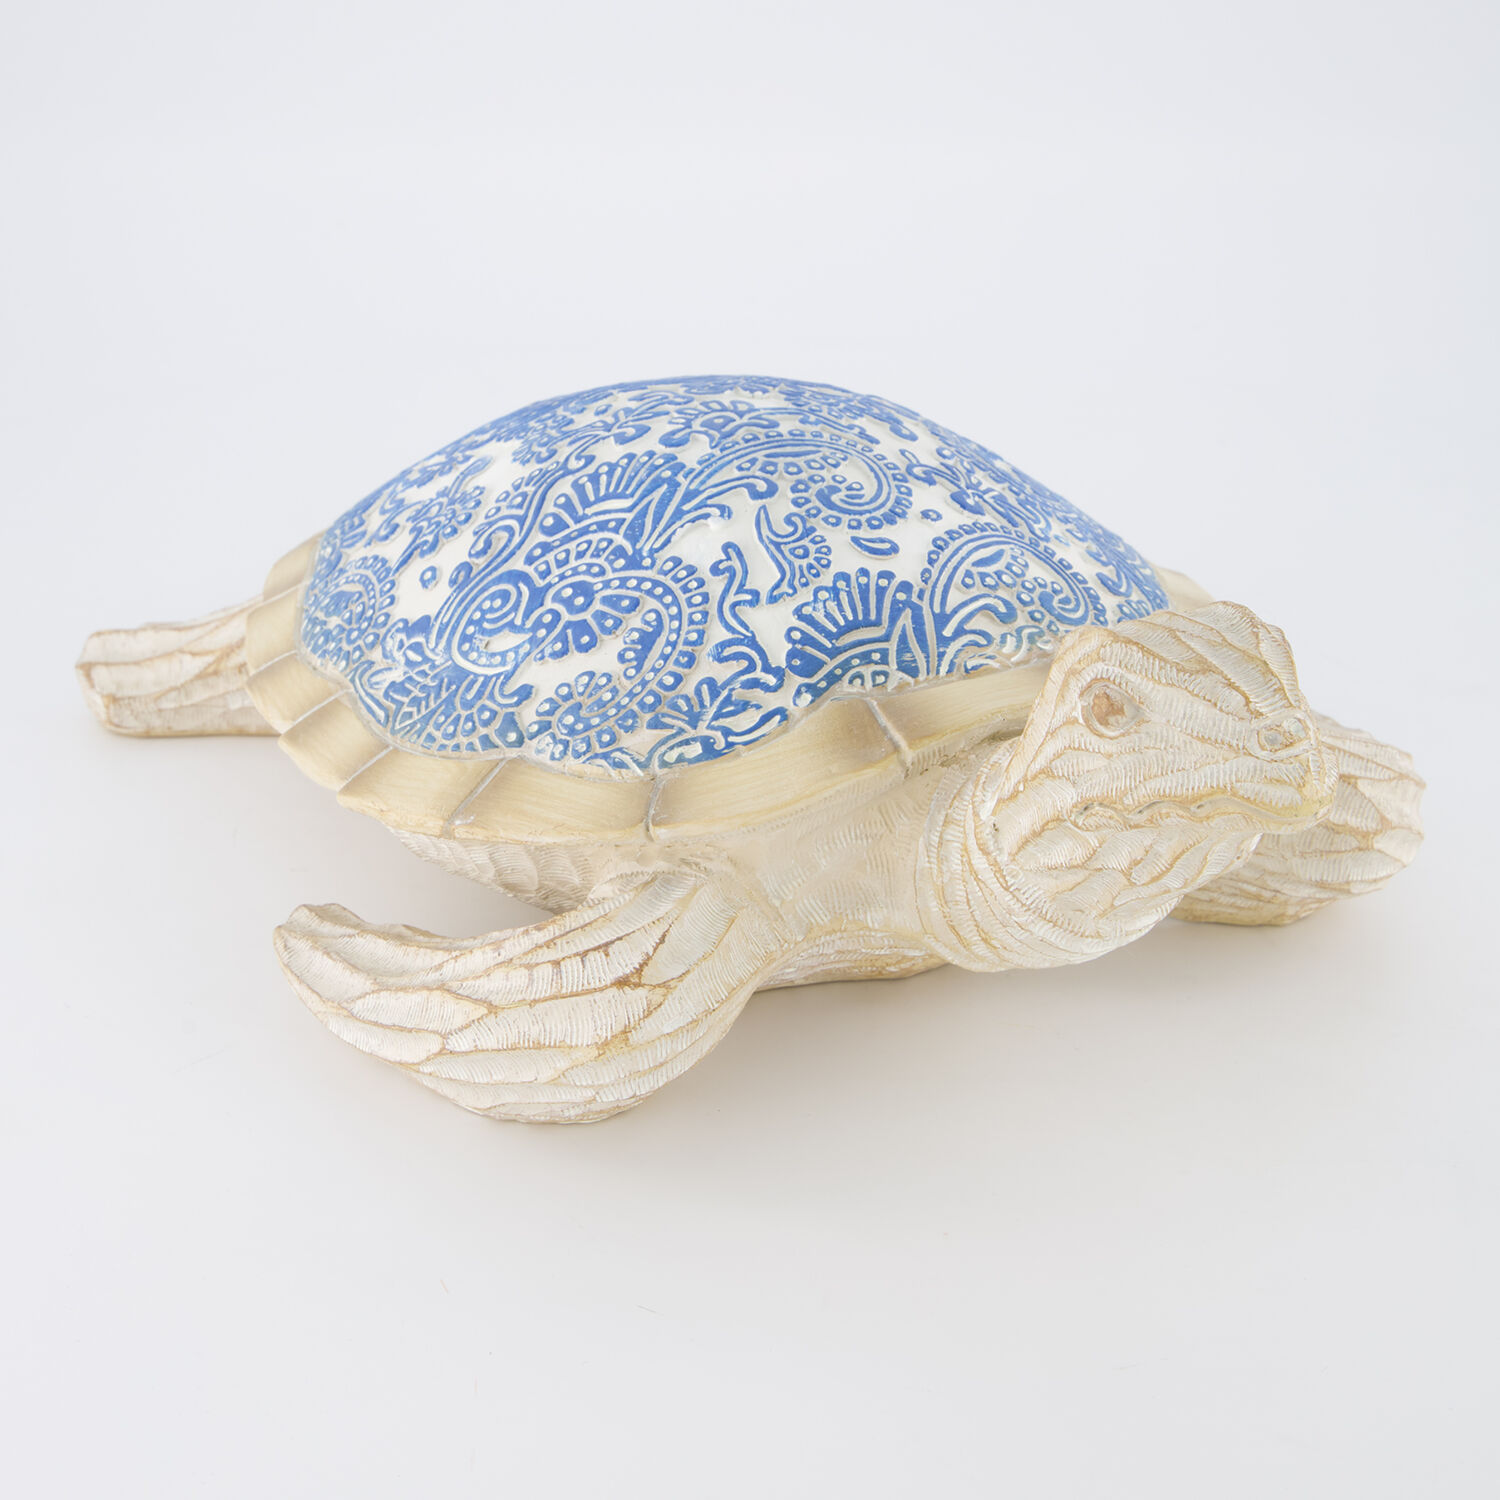 Декоративная фигурка сине-бежевого цвета в виде морской черепахи 12х37см Galt International раскраски galt транспор